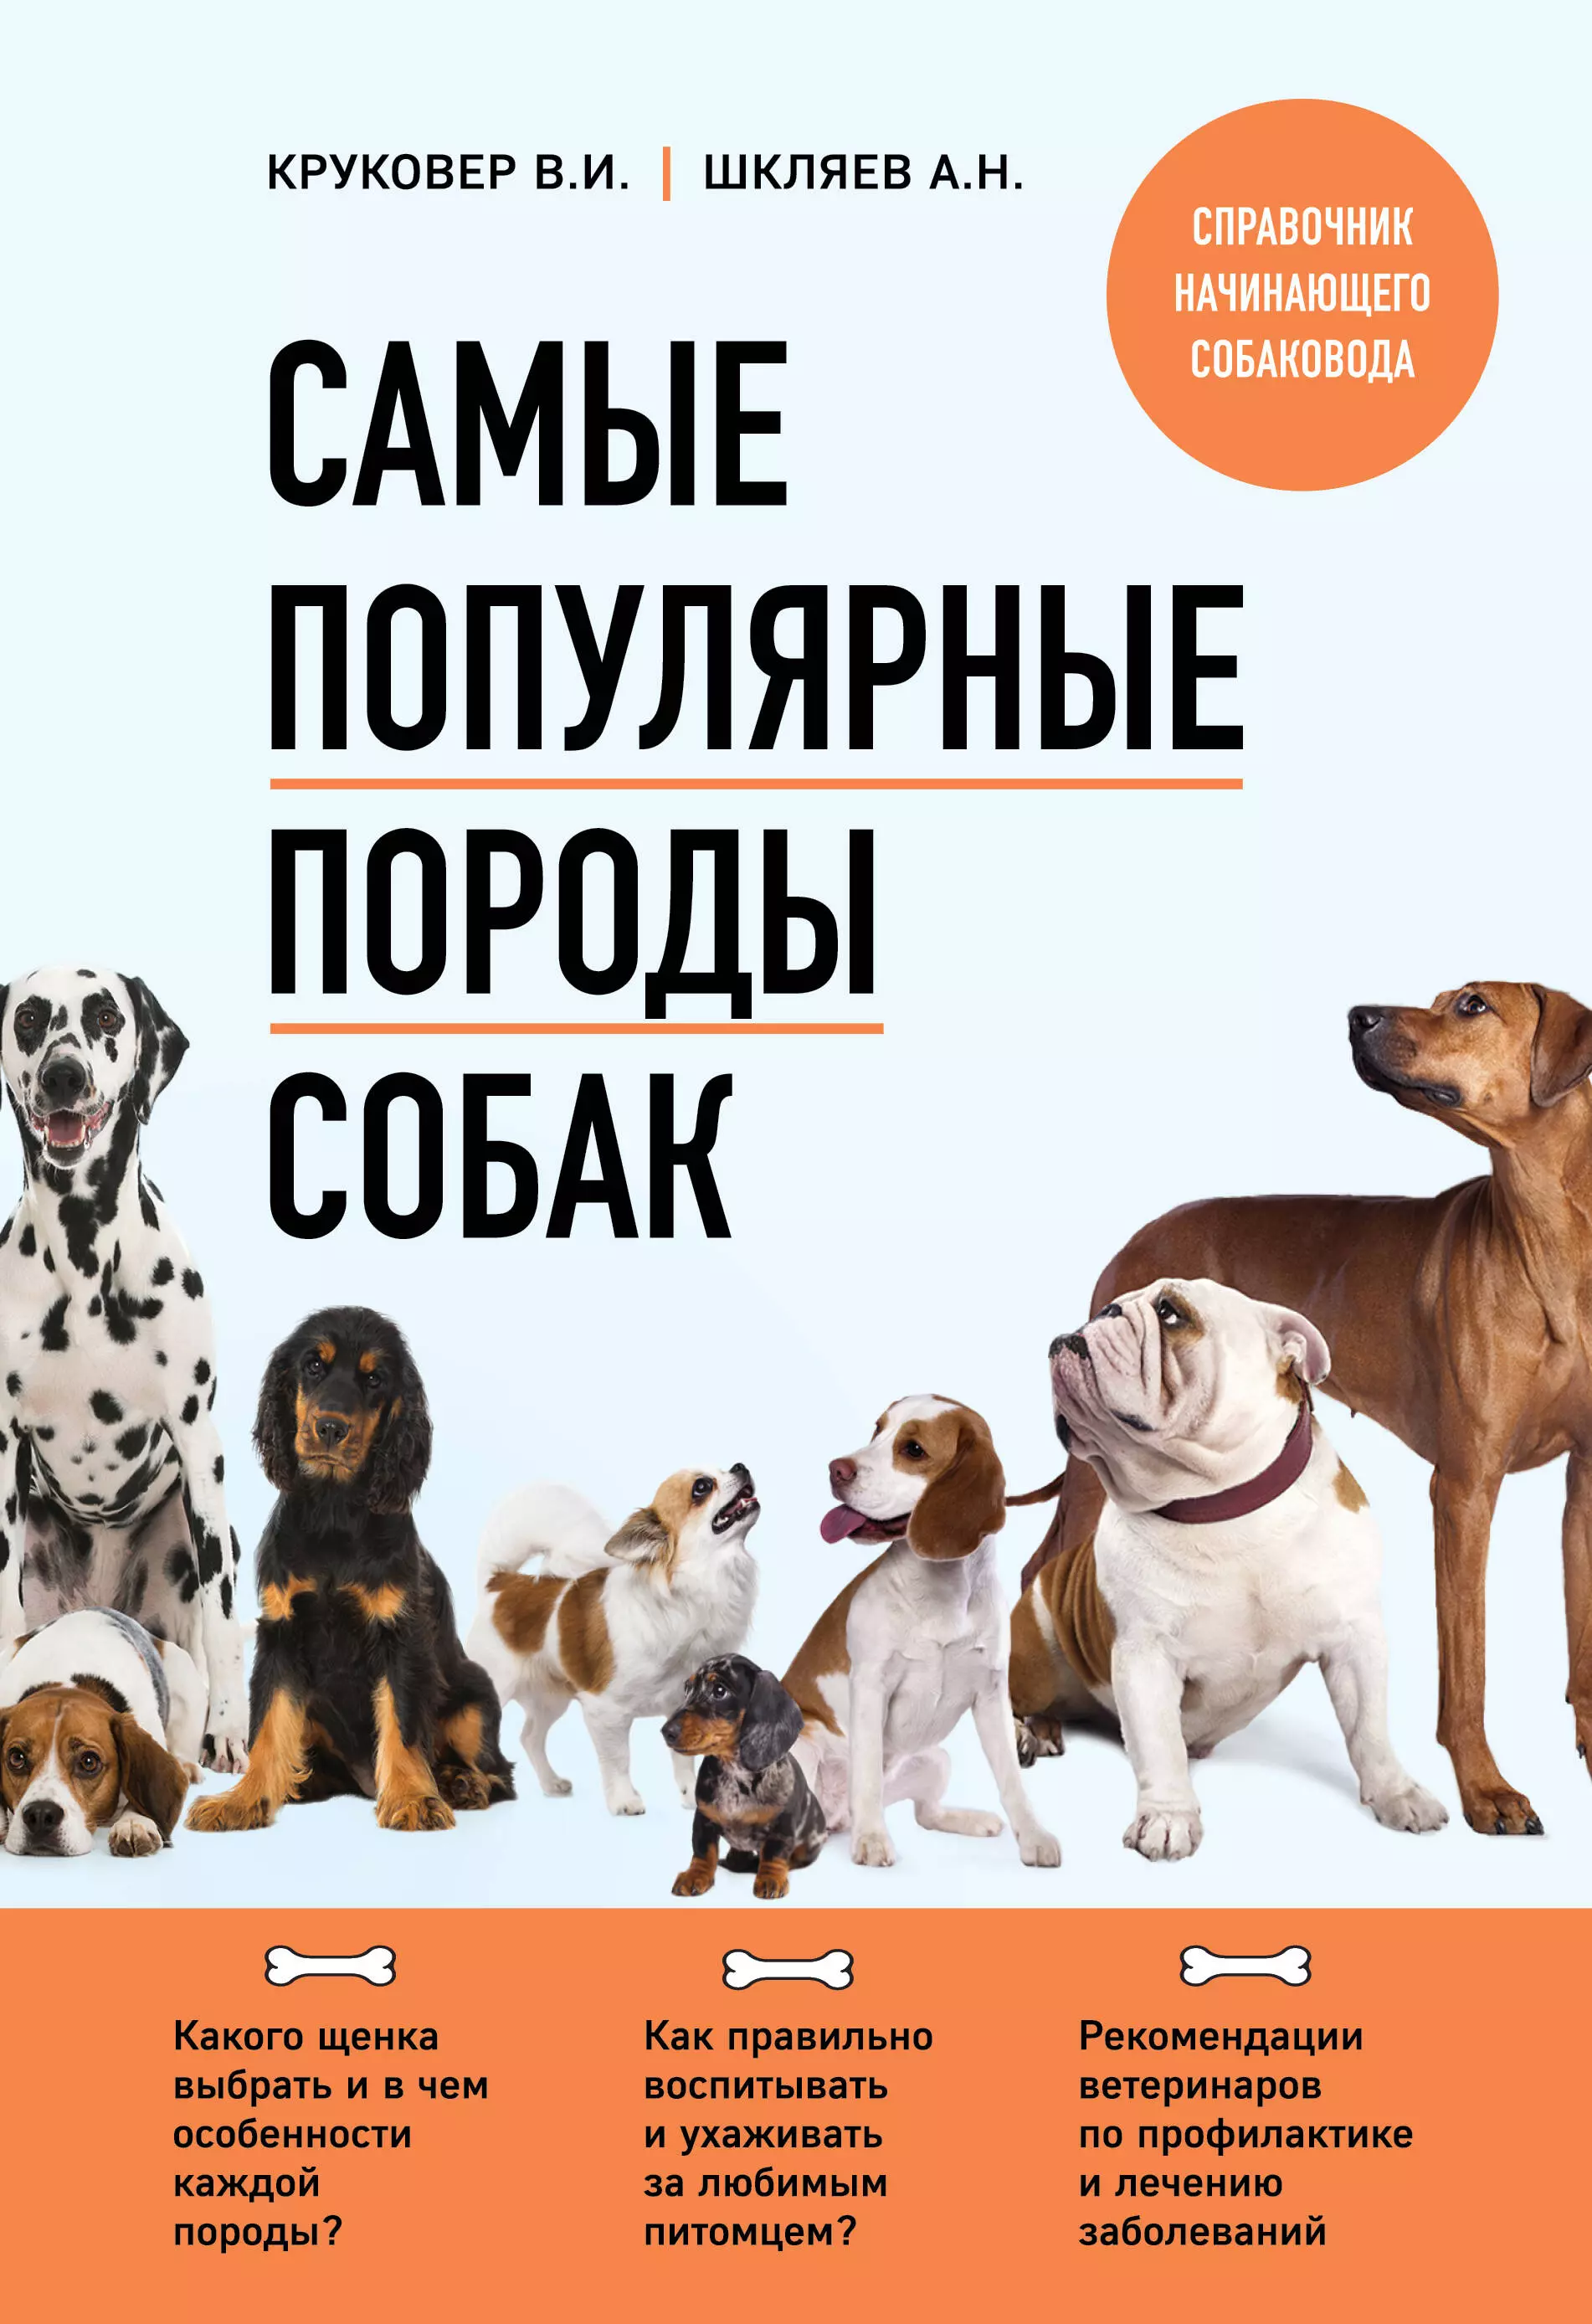 Круковер Владимир Исаевич, Шкляев Андрей Николаевич - Самые популярные породы собак